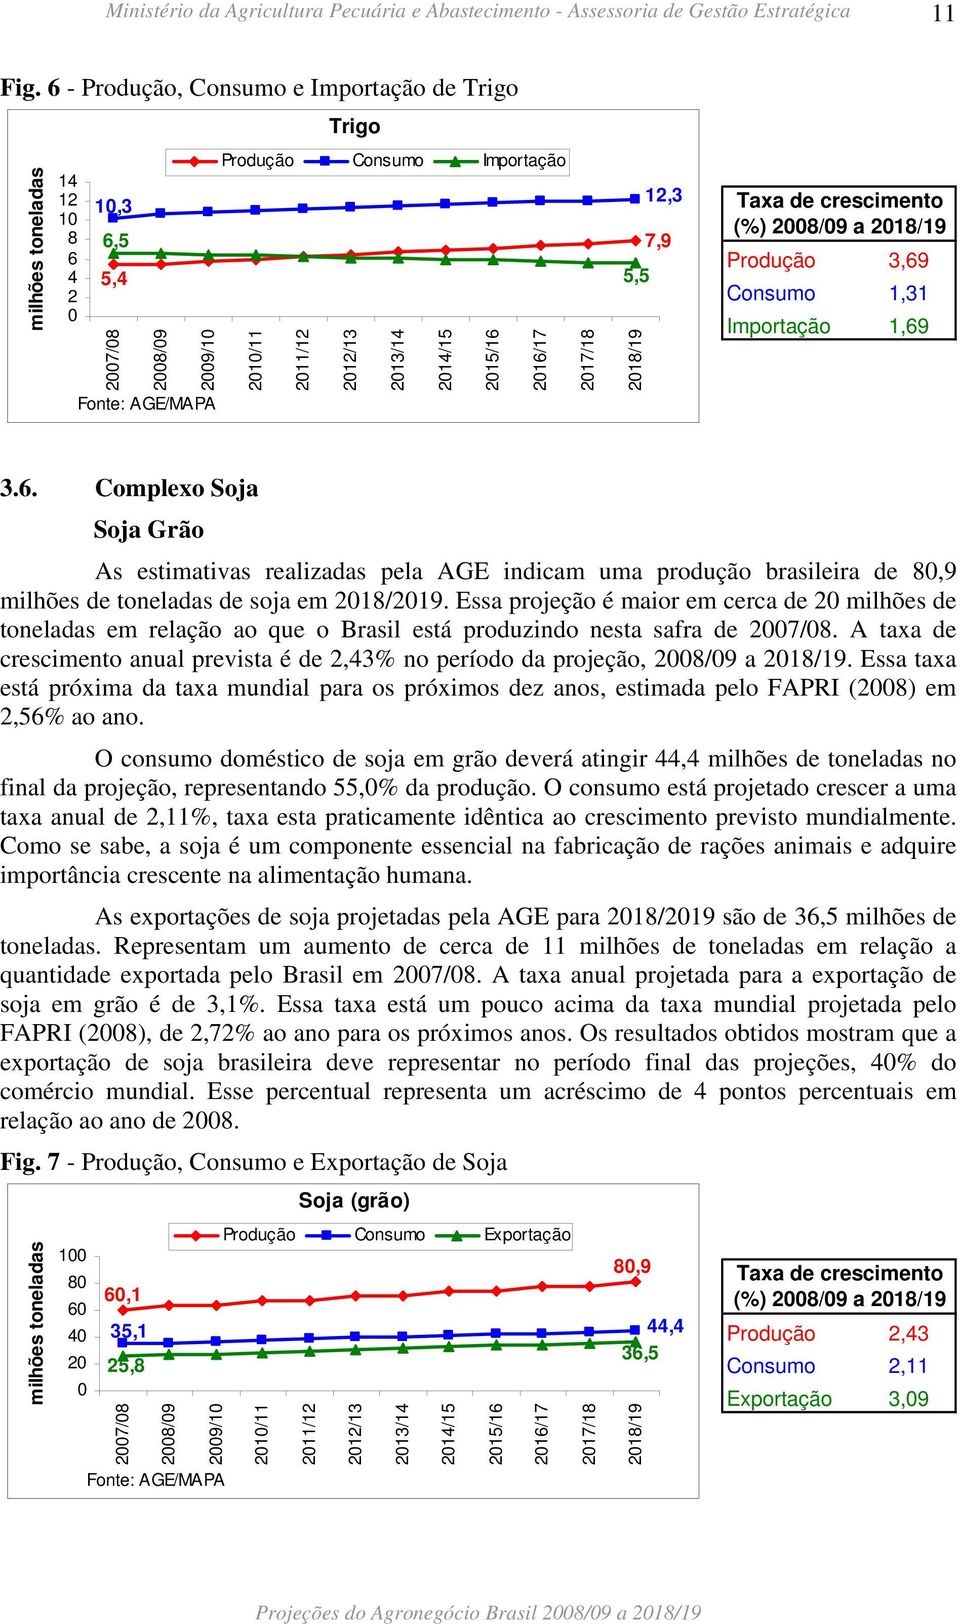 2016/17 2017/18 12,3 7,9 5,5 2018/19 Produção 3,69 Consumo 1,31 Importação 1,69 3.6. Complexo Soja Soja Grão As estimativas realizadas pela AGE indicam uma produção brasileira de 80,9 milhões de toneladas de soja em 2018/2019.